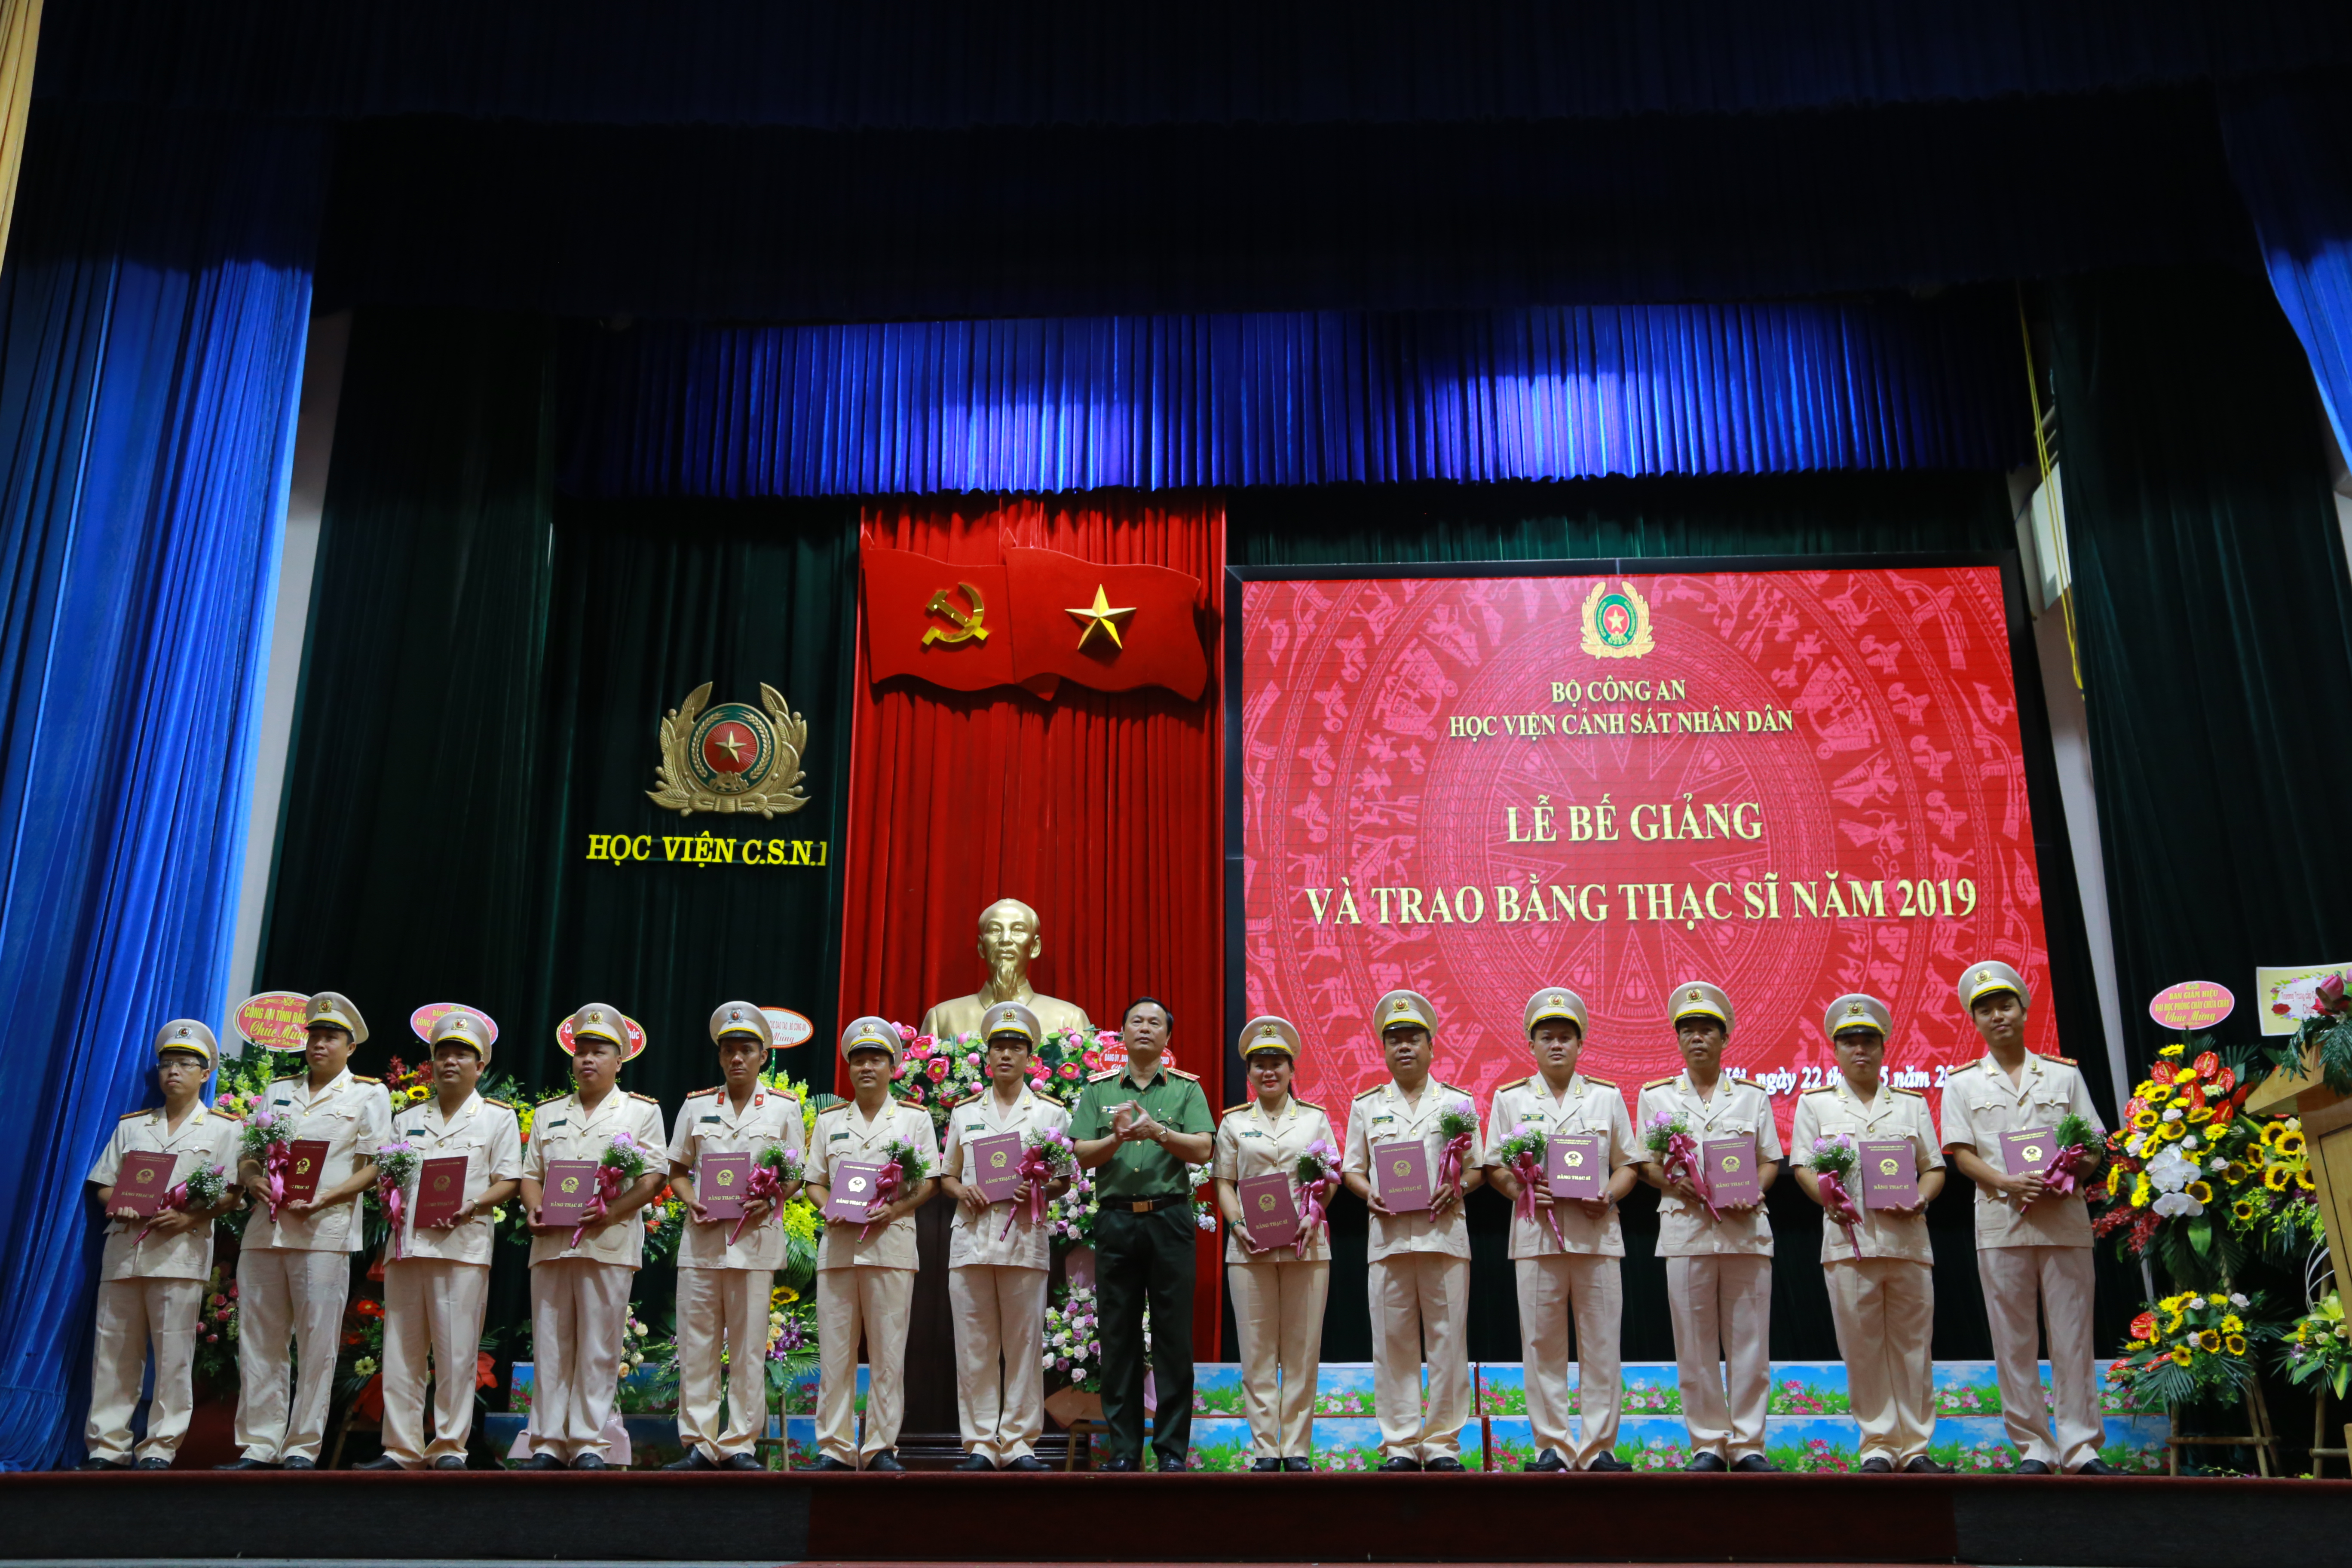 Thiếu tướng, GS.TS Bùi Minh Giám, Cục trưởng Cục Đào tạo Bộ Công an trao bằng cho các tân Thạc sỹ năm 2019 tại Học viện CSND.